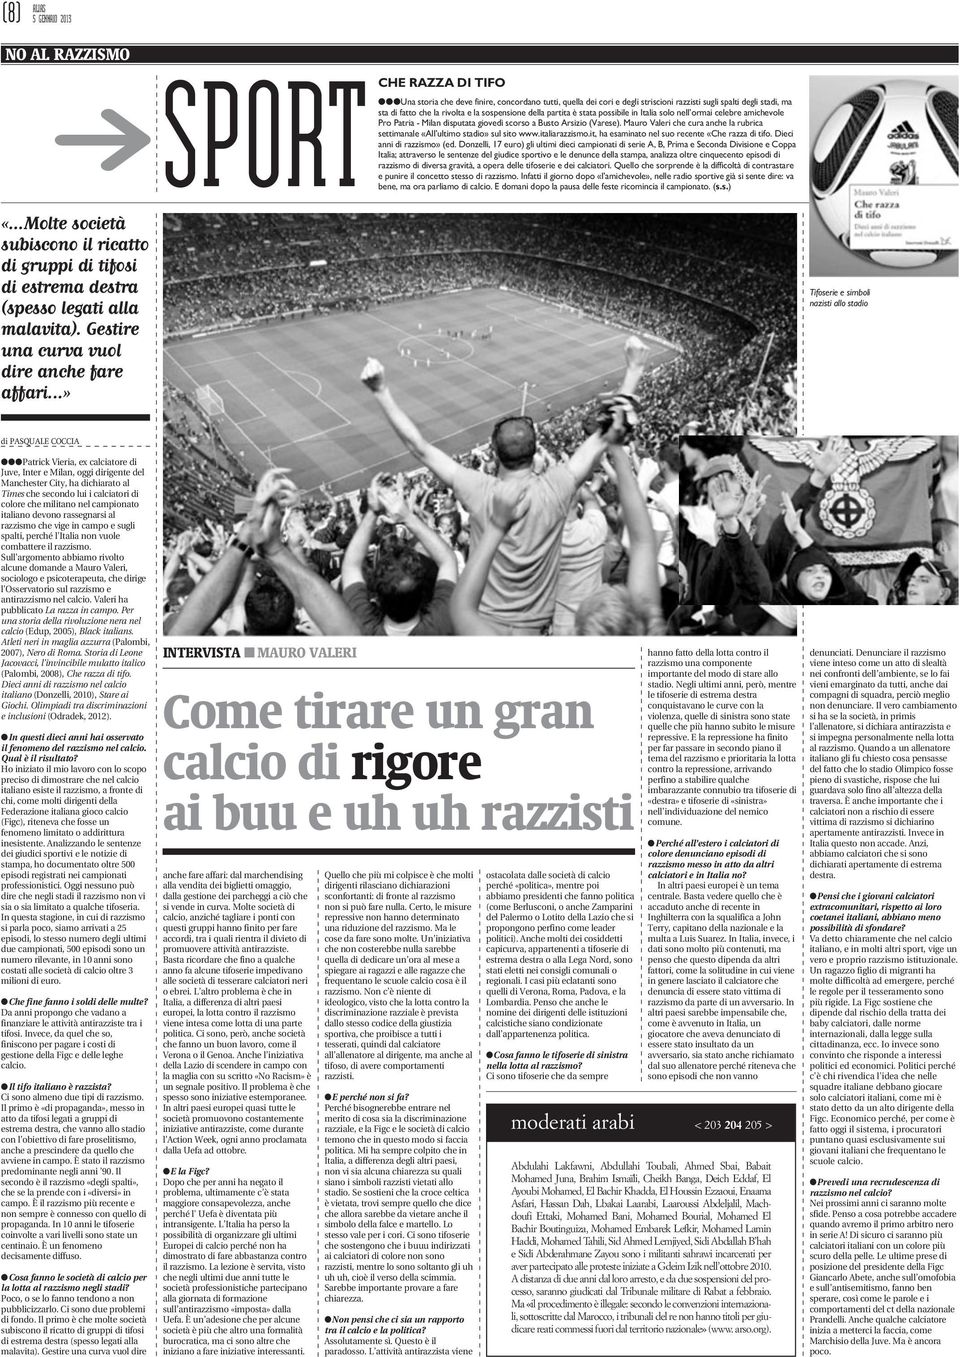 Mauro Valeri che cura anche la rubrica settimanale «All ultimo stadio» sul sito www.italiarazzismo.it, ha esaminato nel suo recente «Che razza di tifo. Dieci anni di razzismo» (ed.